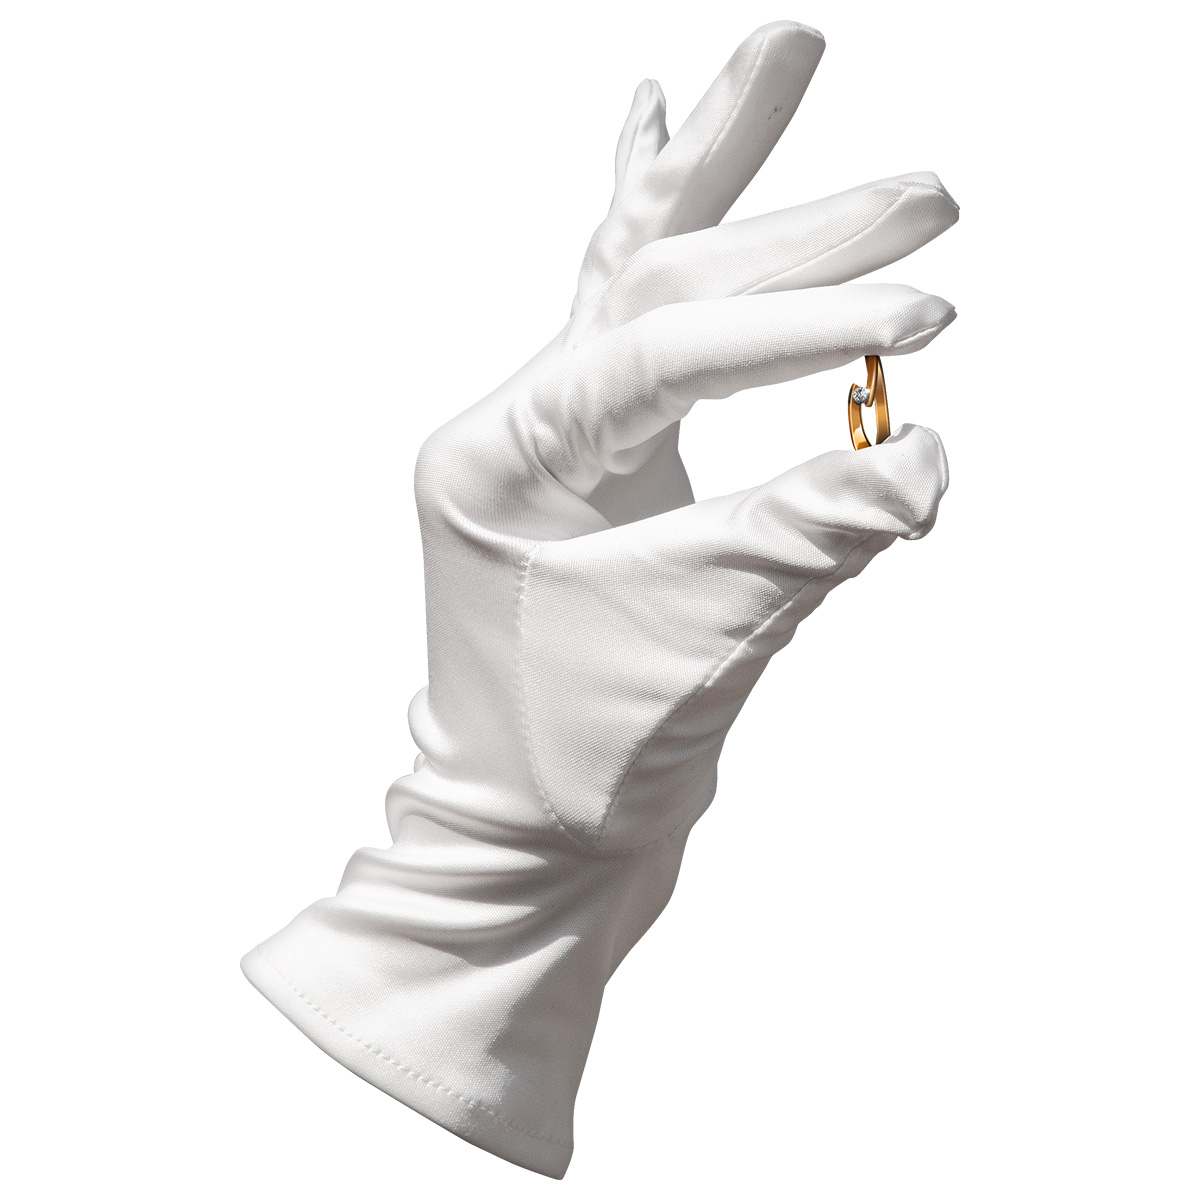 Mikrofaser Handschuh-Paar Haute Couture, weiß, Größe S
